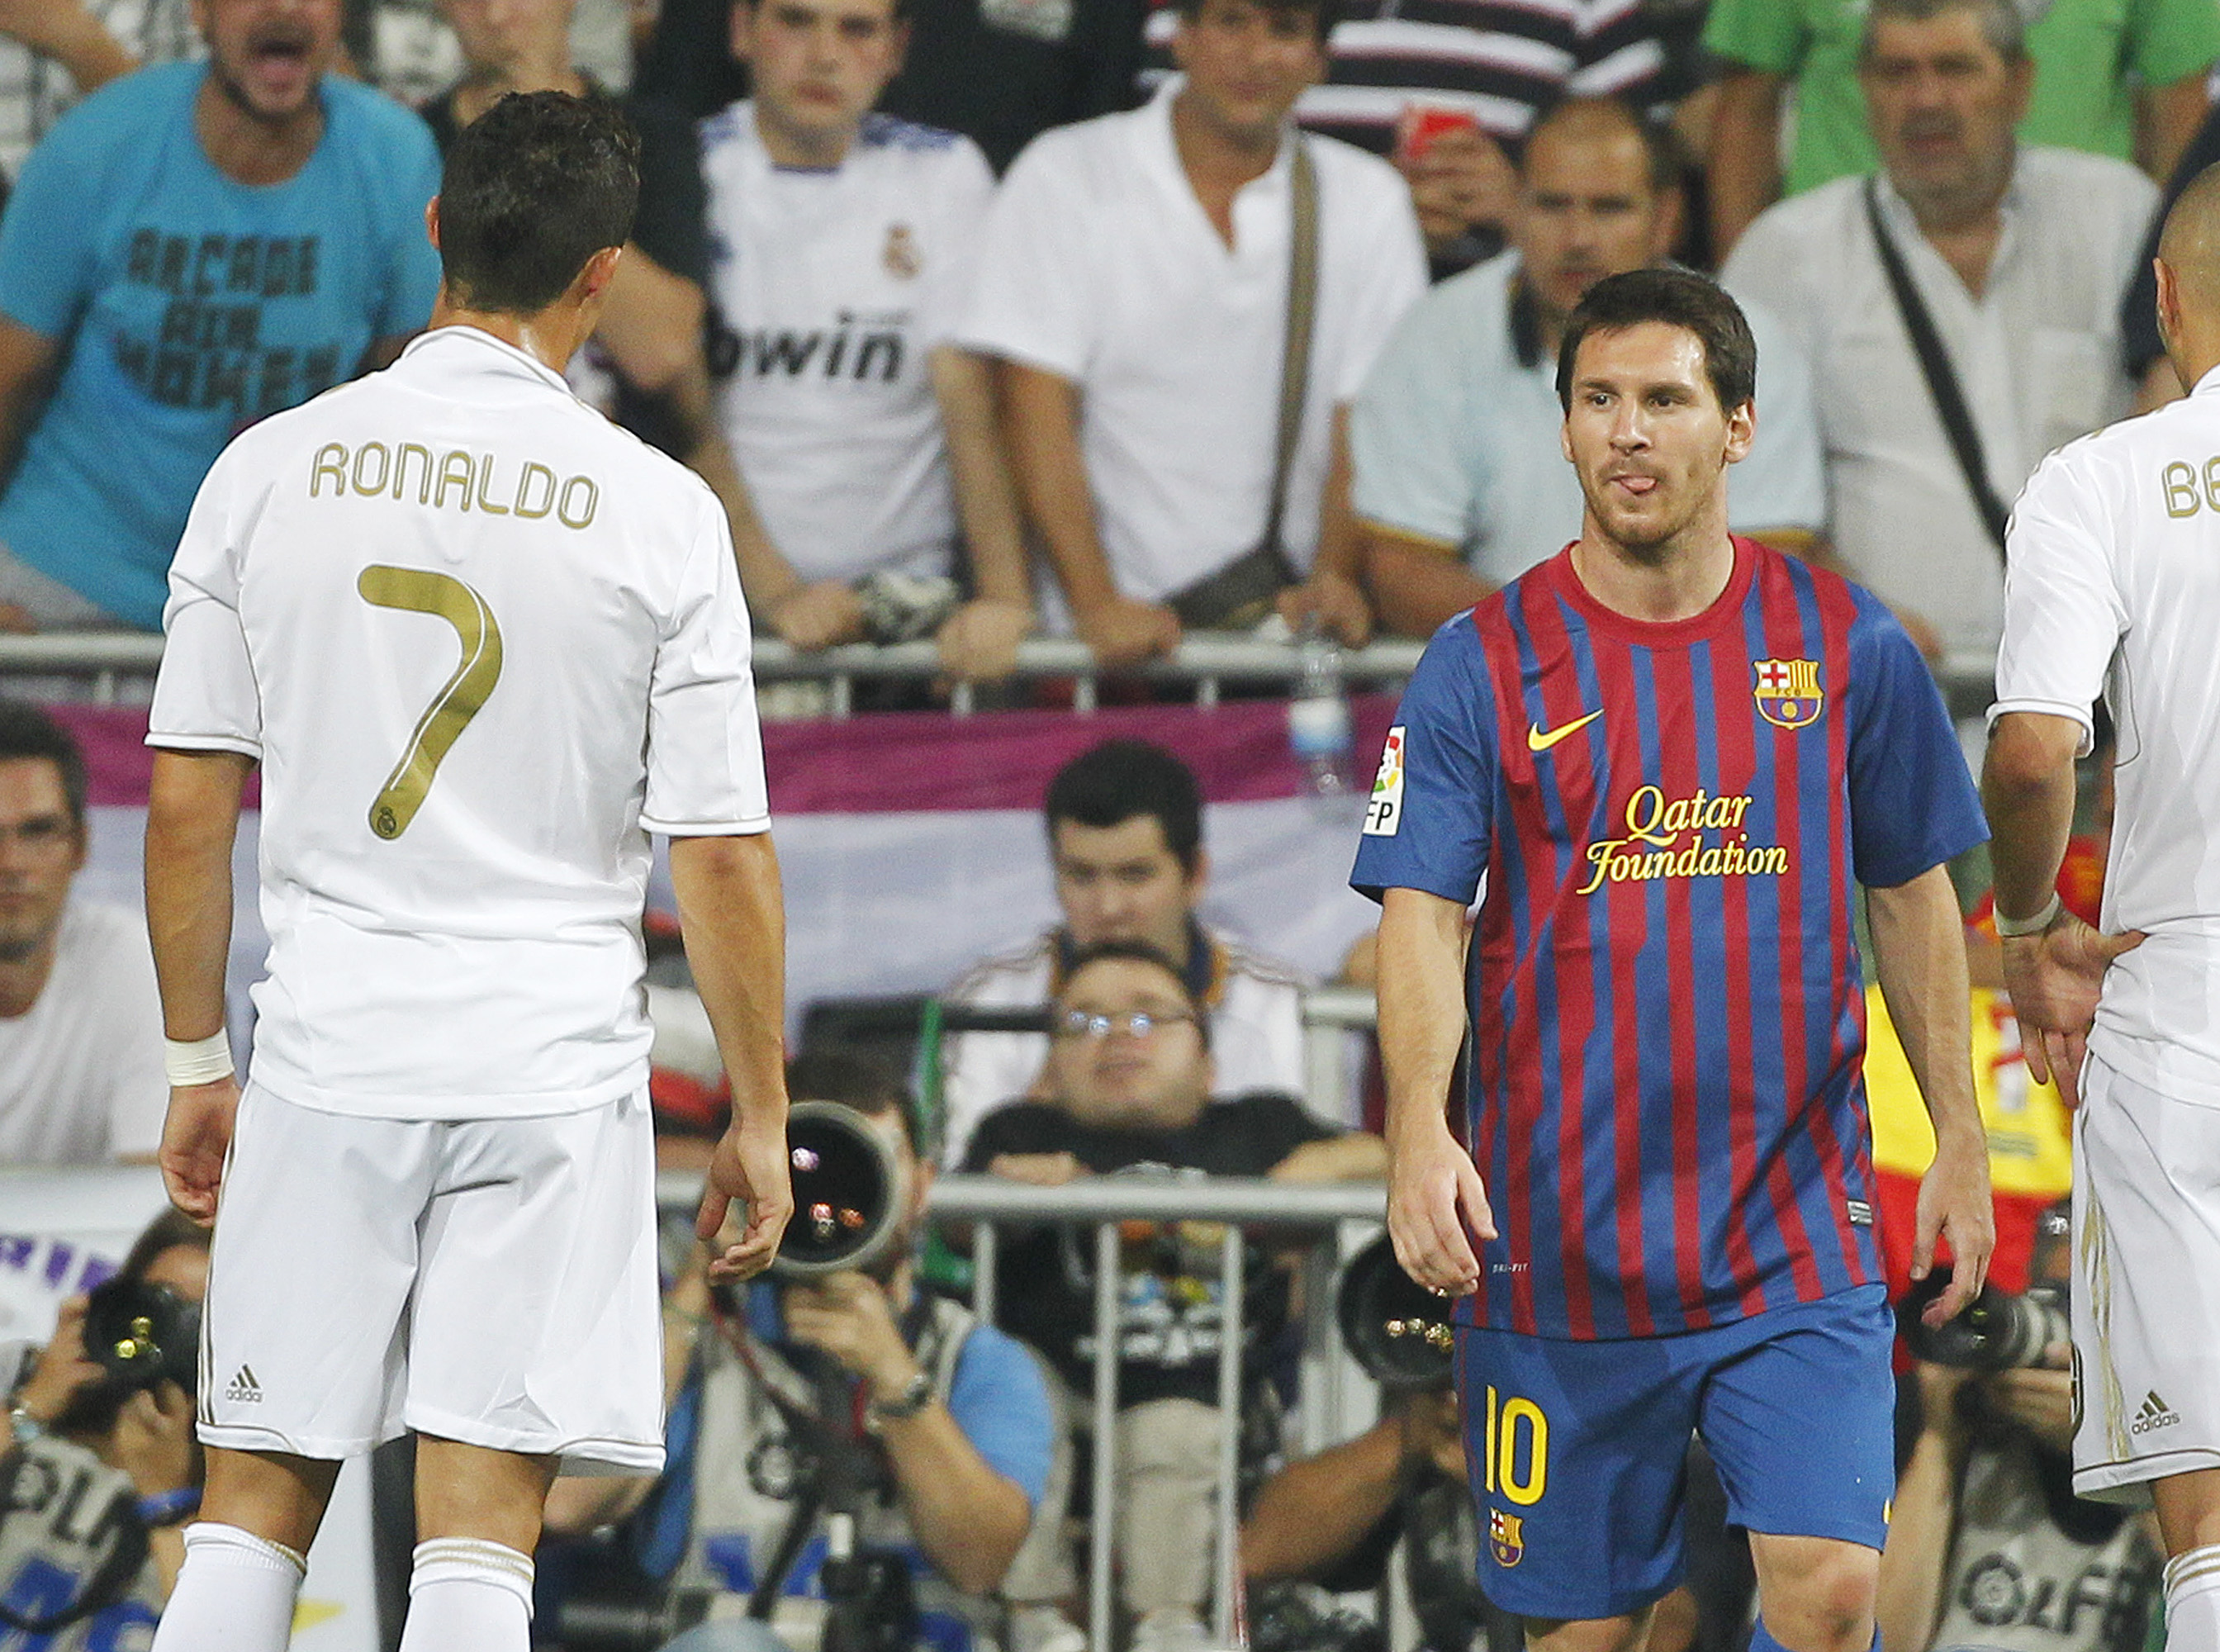 Ronaldo och Messi lär dominera lika mycket som tidigare säsonger.